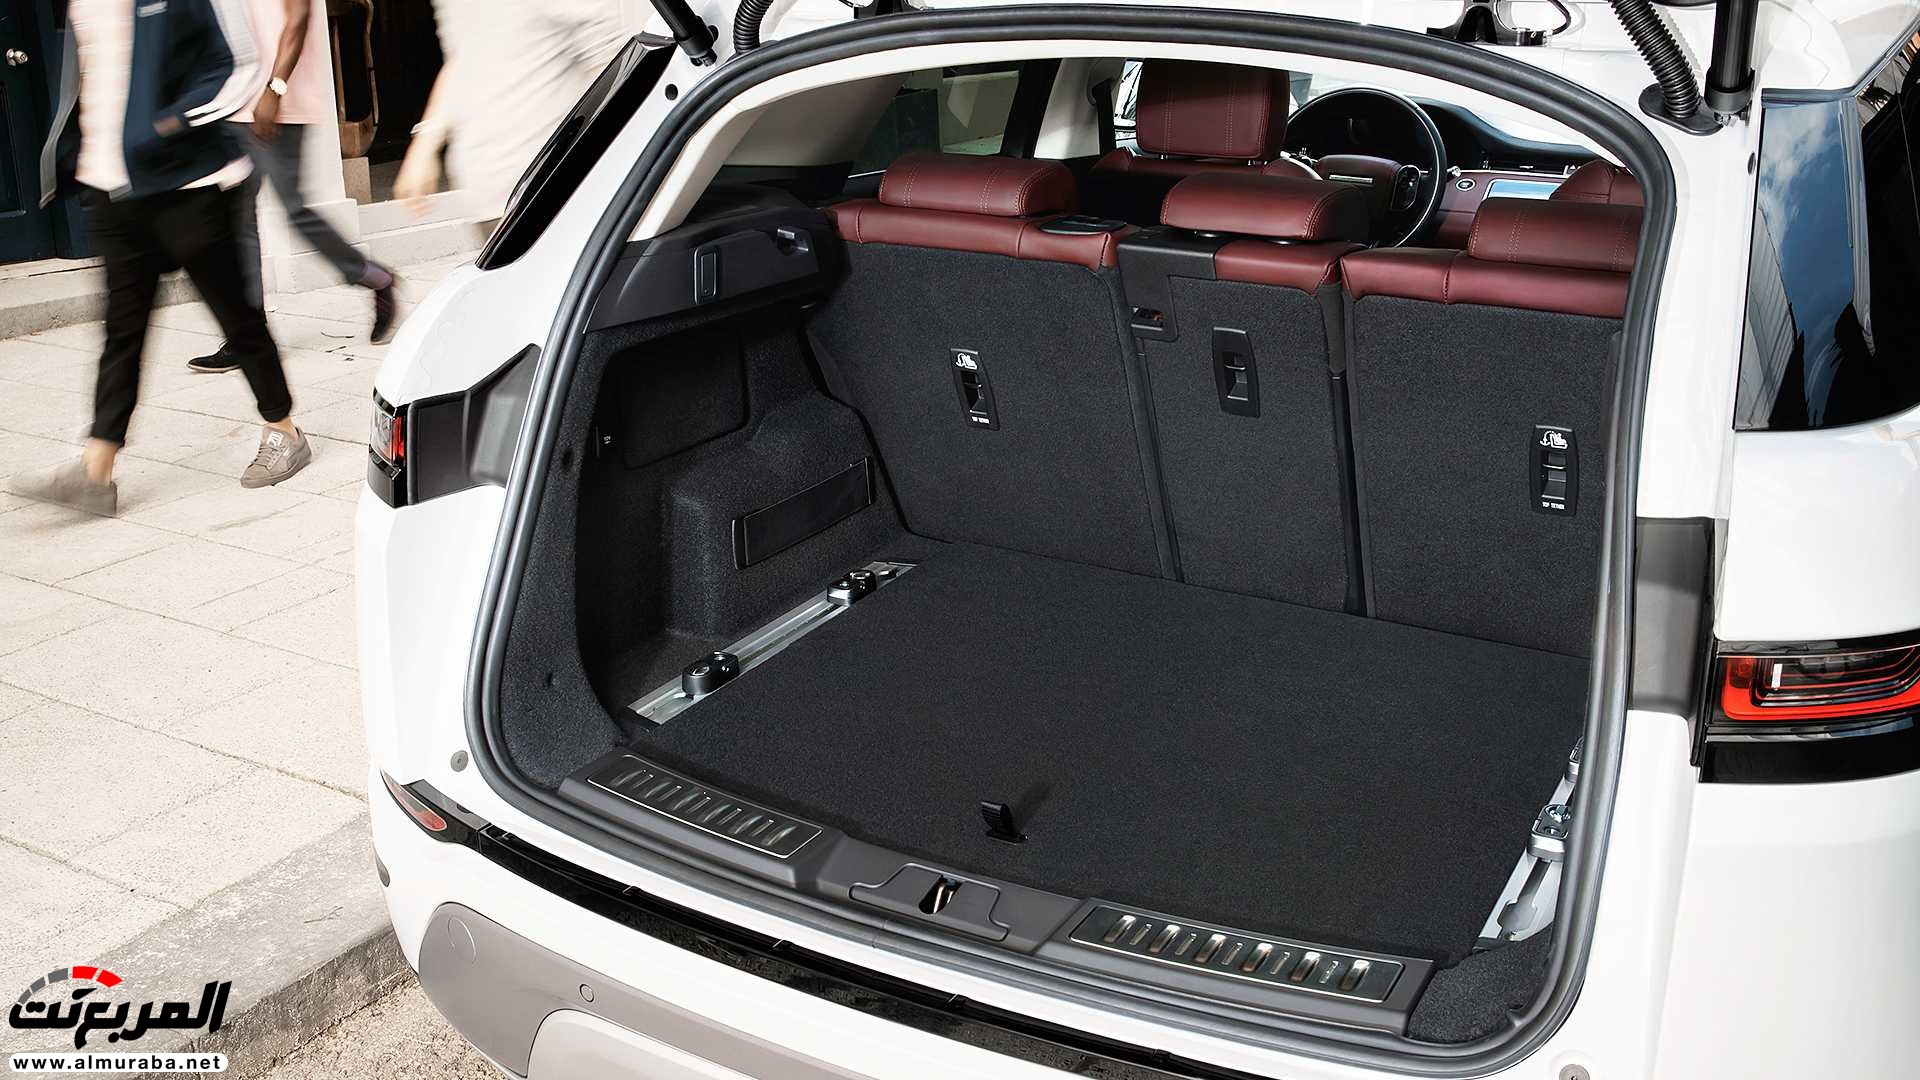 اهم 7 معلومات عن رنج روفر ايفوك 2020 الجديدة كلياً Range Rover Evoque 58